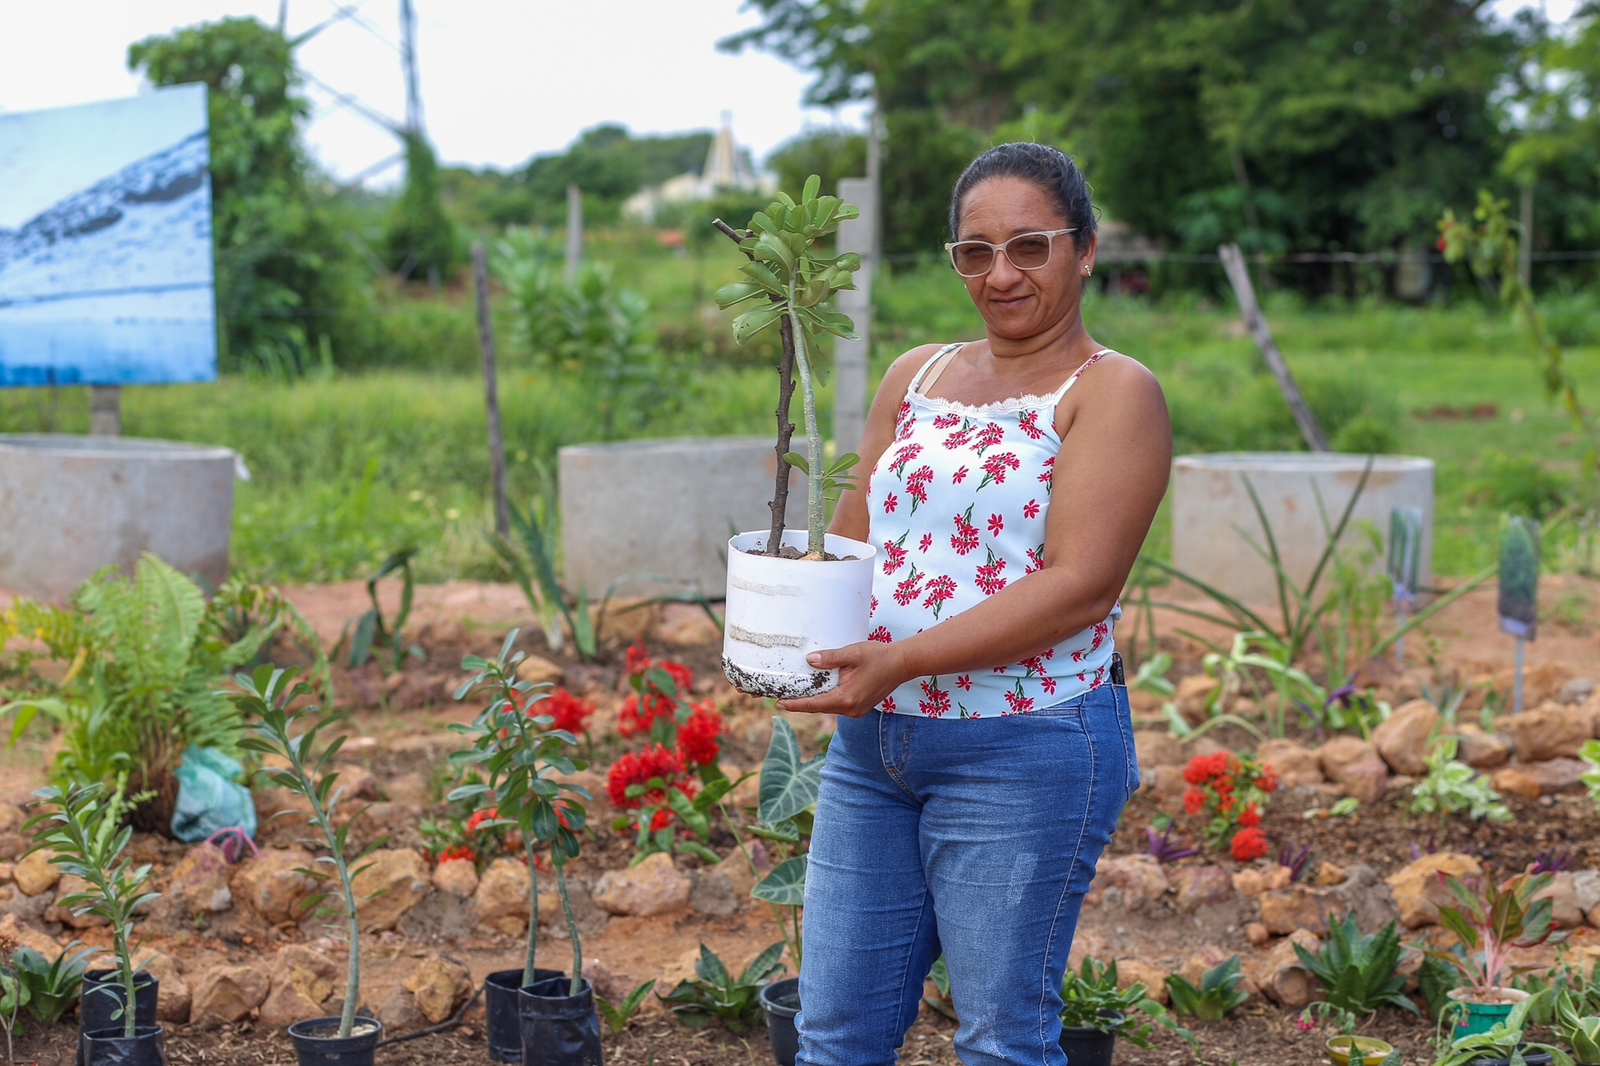 Nas hortas do Dirceu em Teresina, os horticultores iniciaram o projeto de produção de flores que vai ajudar a incrementar a renda e gerar trabalho